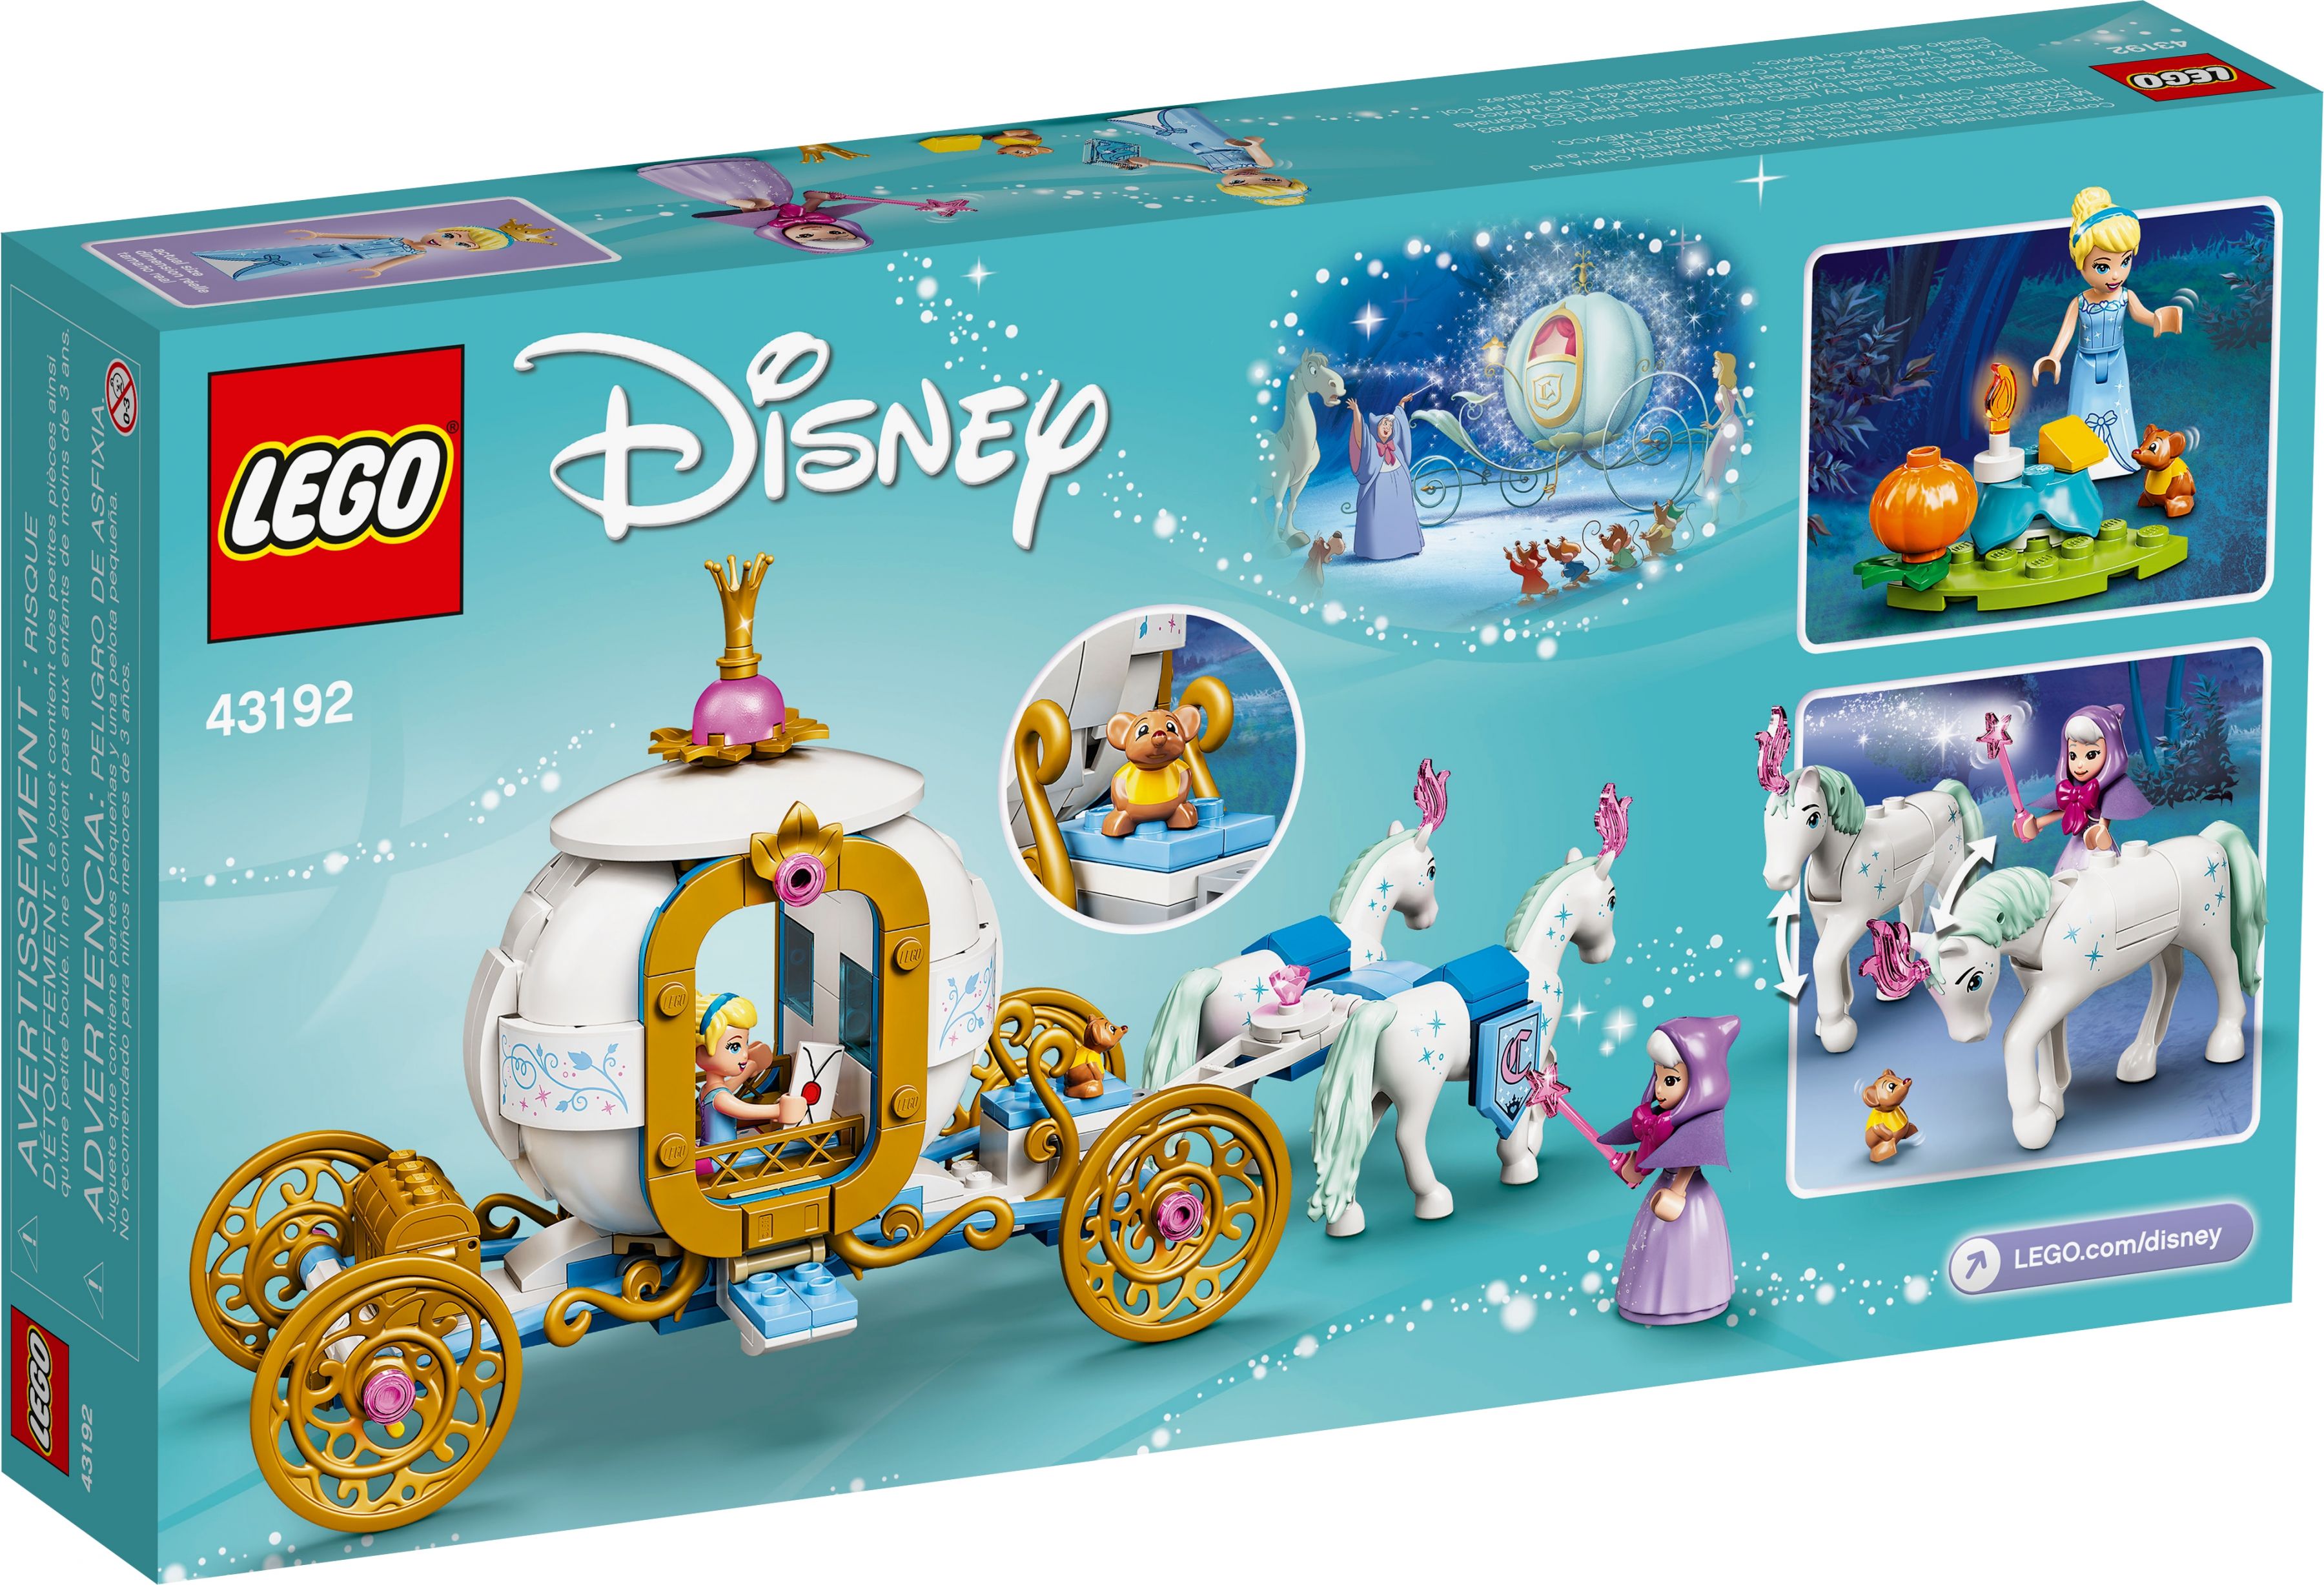 LEGO Disney 43192 Cinderellas königliche Kutsche LEGO_43192_box5_v39.jpg